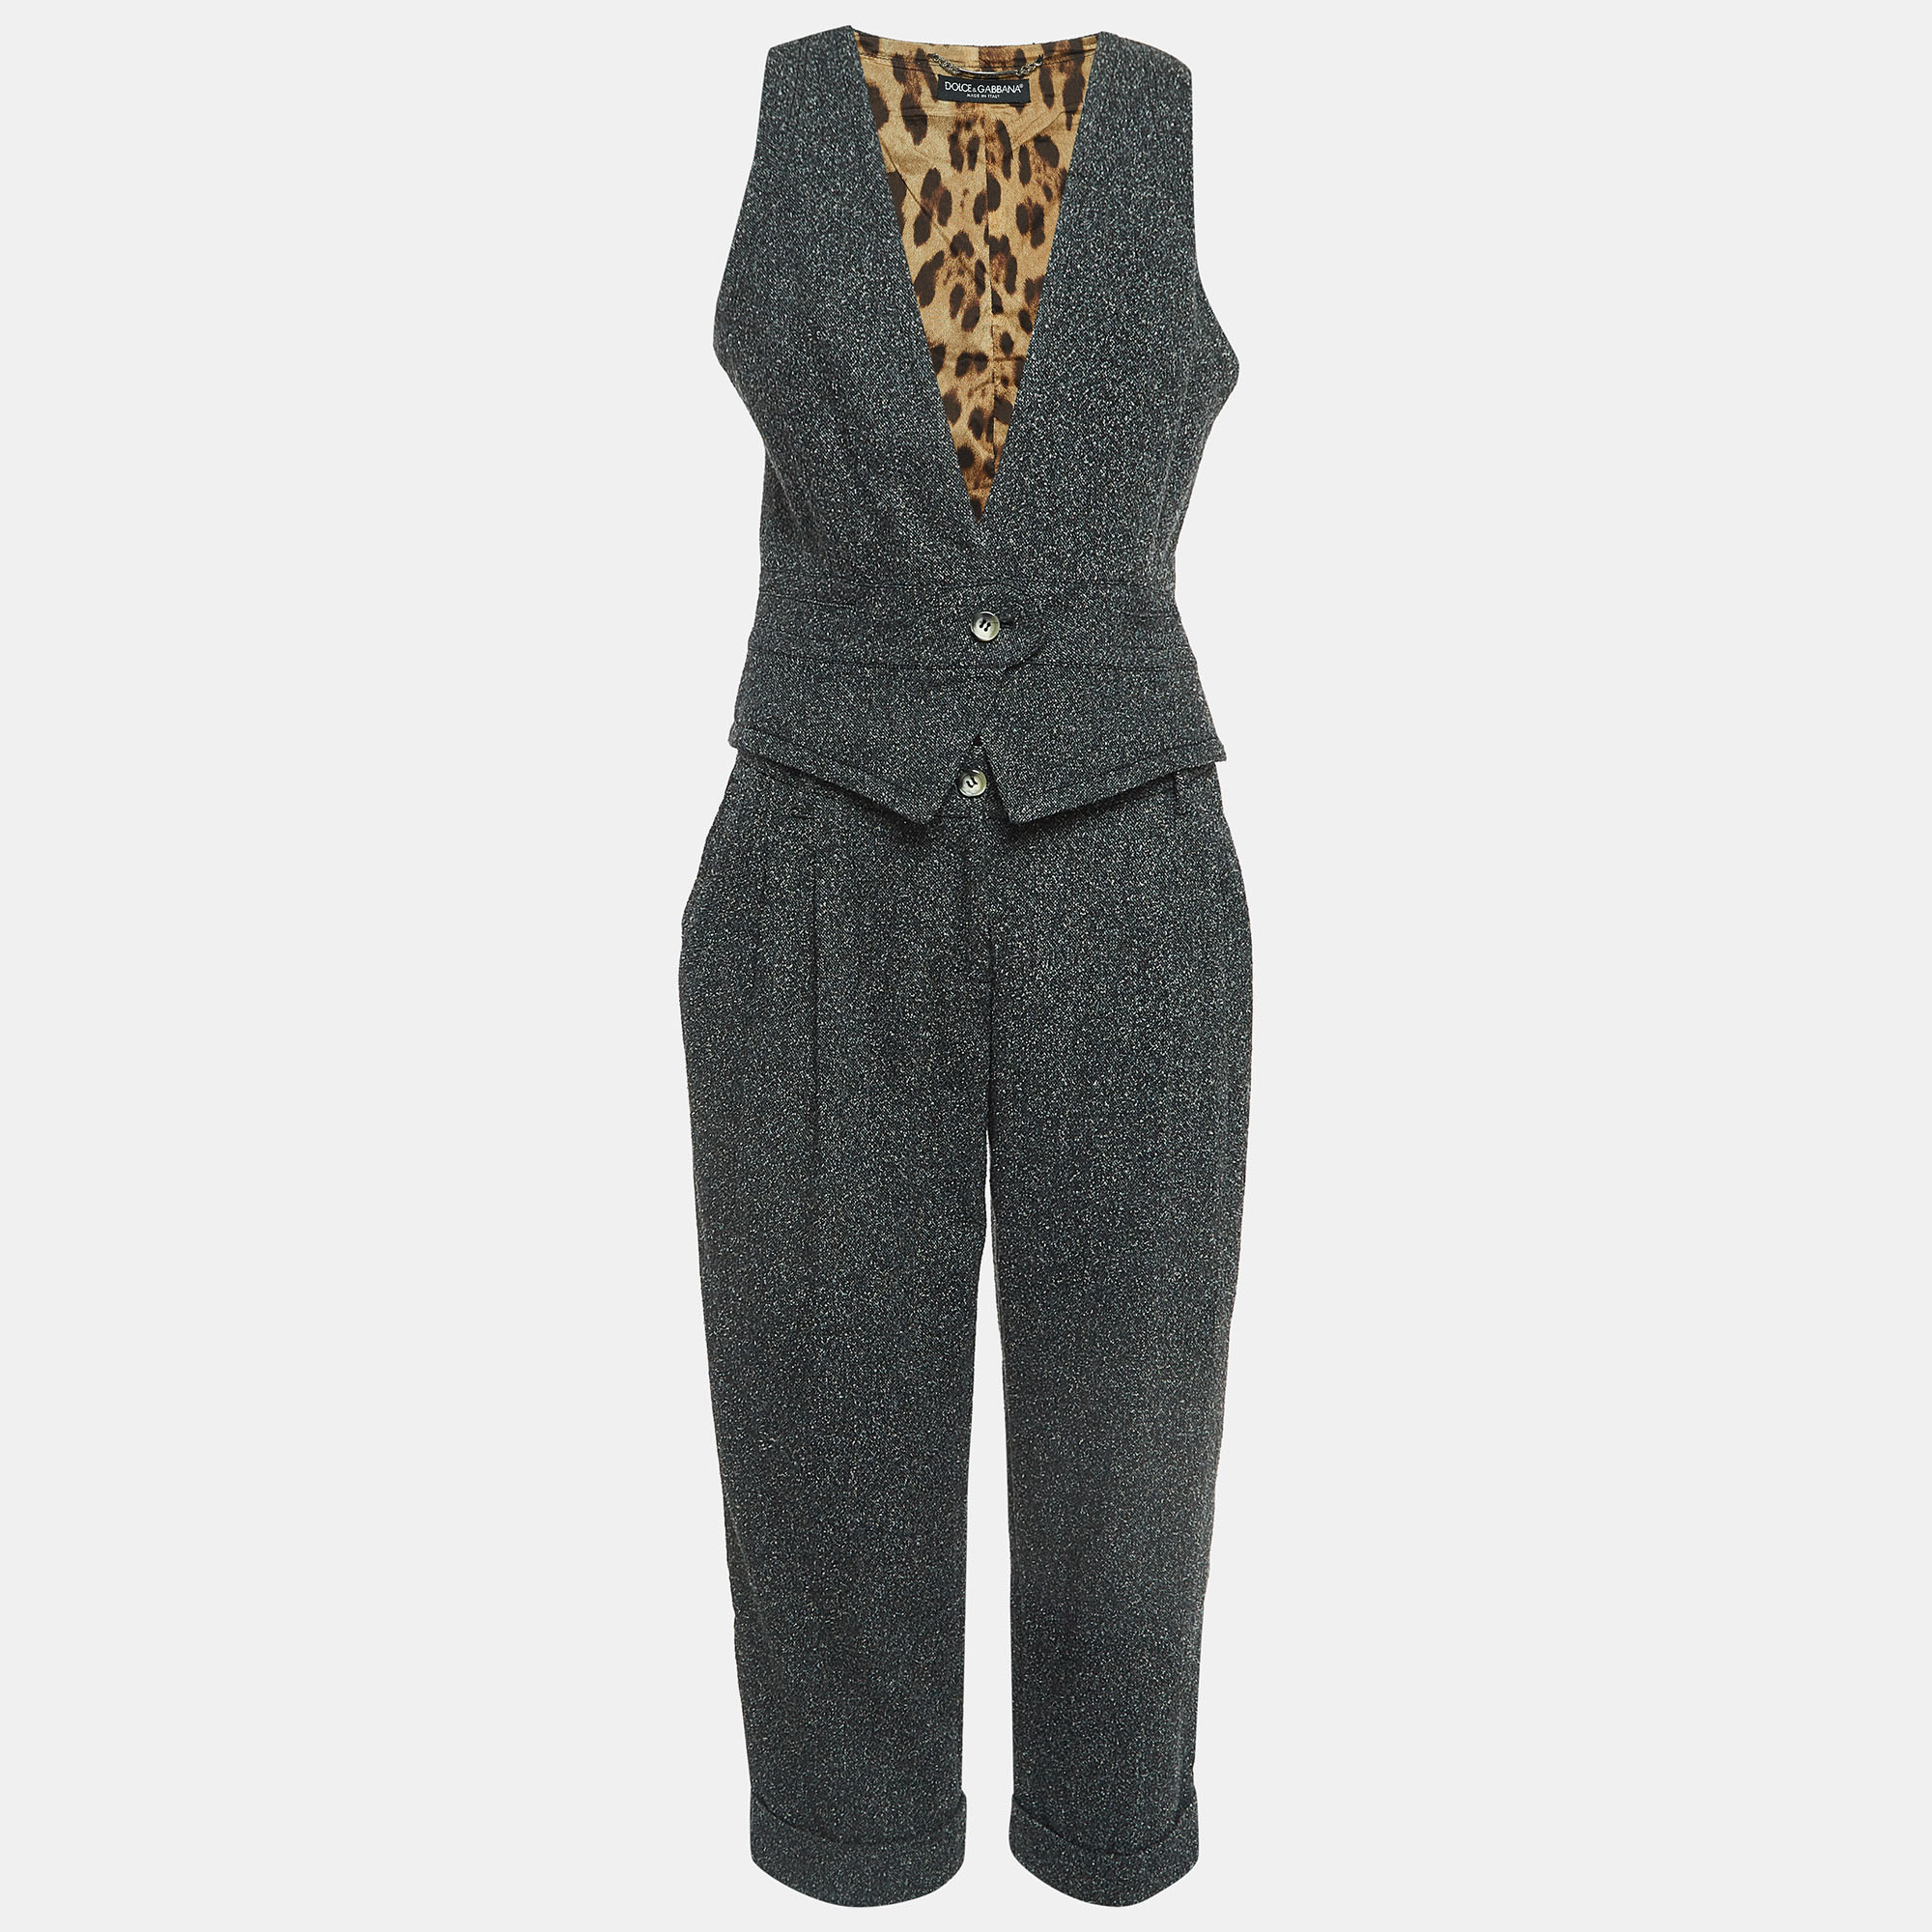 Dolce & gabbana grey wool blend knit vest and pants suit m